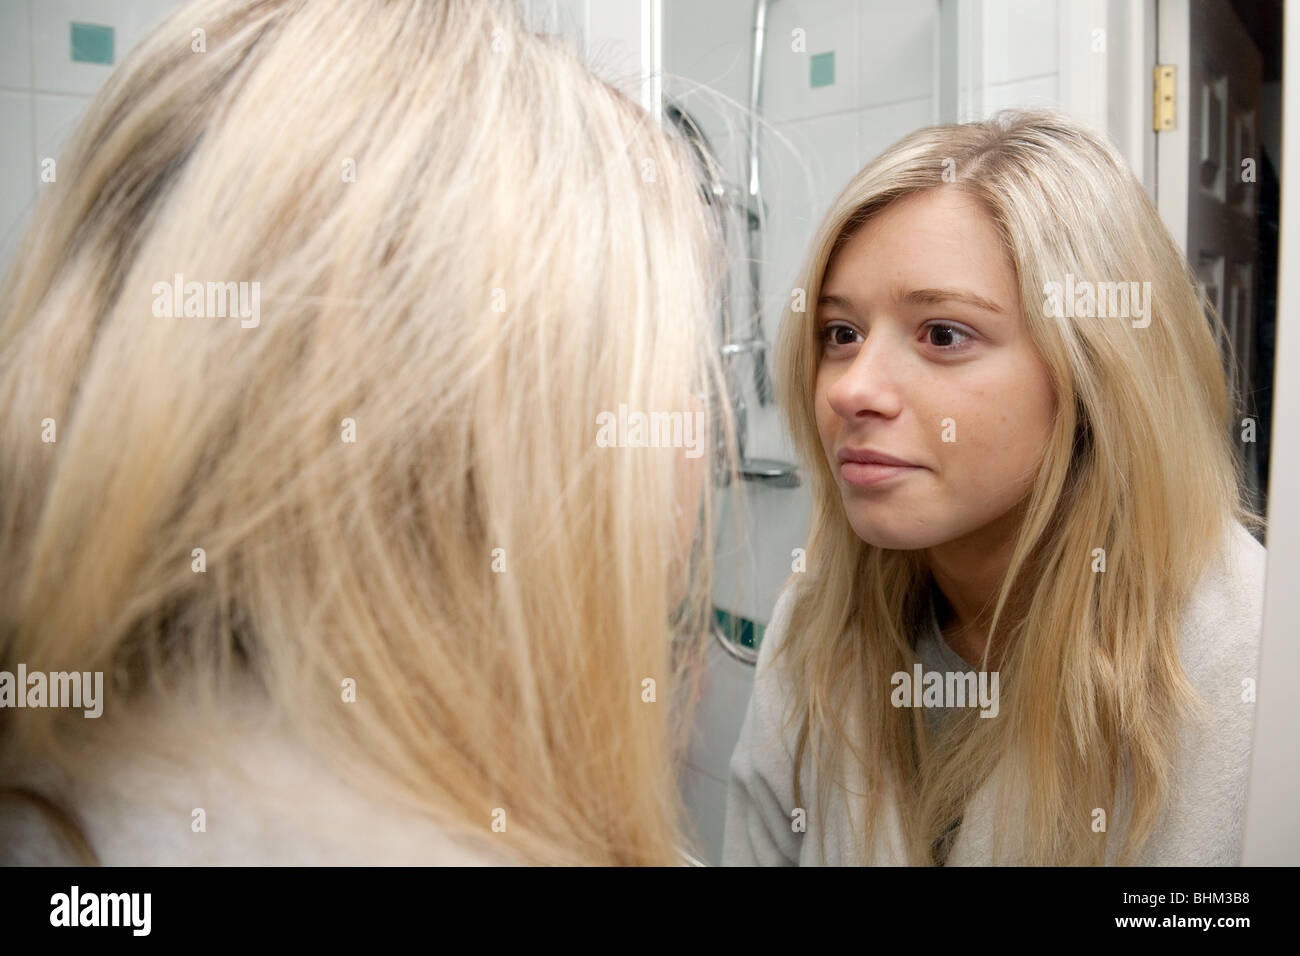 Adolescente blonde à son reflet dans son miroir de salle de bains Banque D'Images